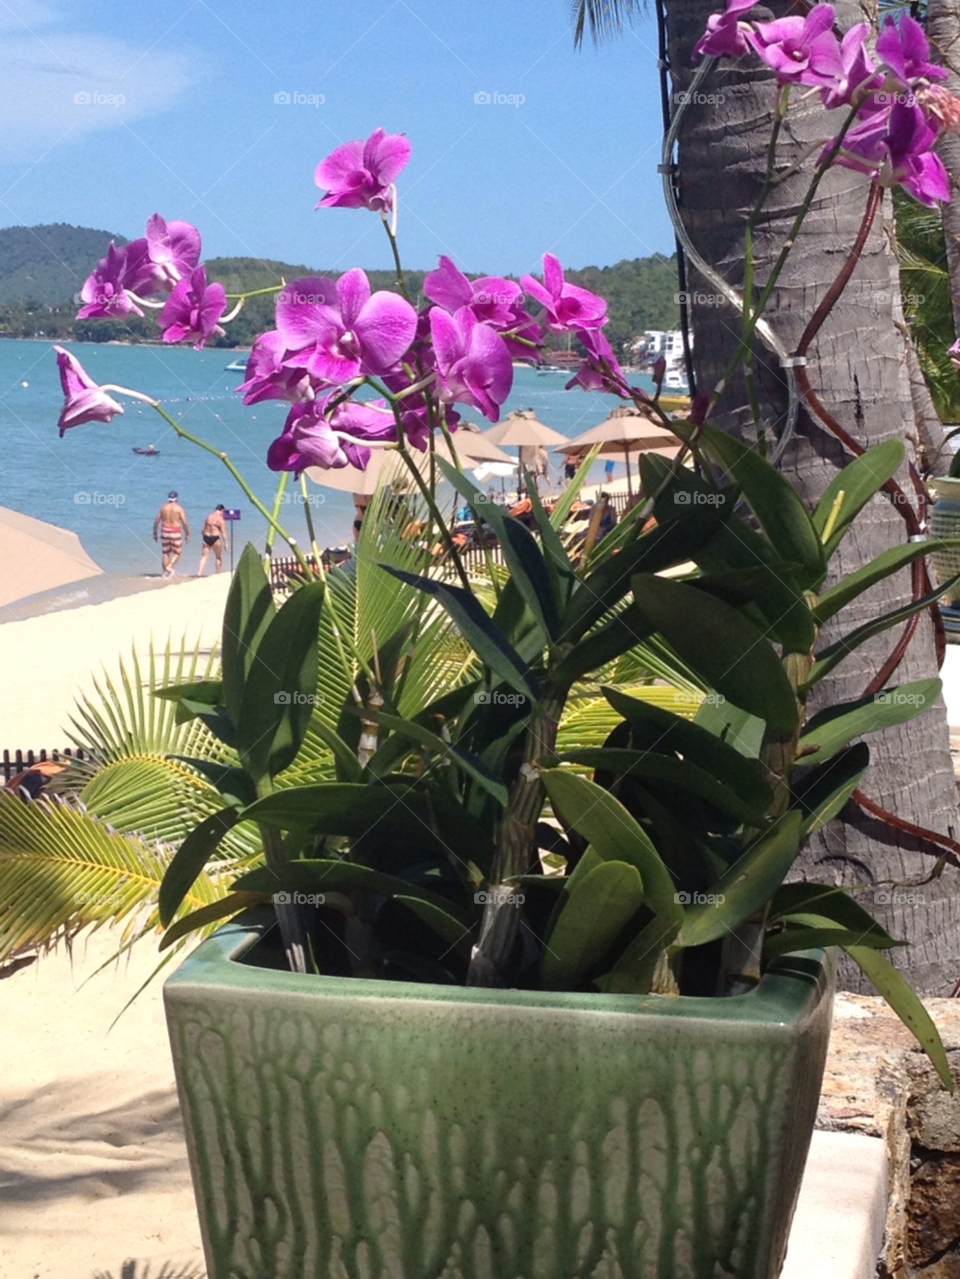 koh samui thailand ocean orchids beach scene by beadz